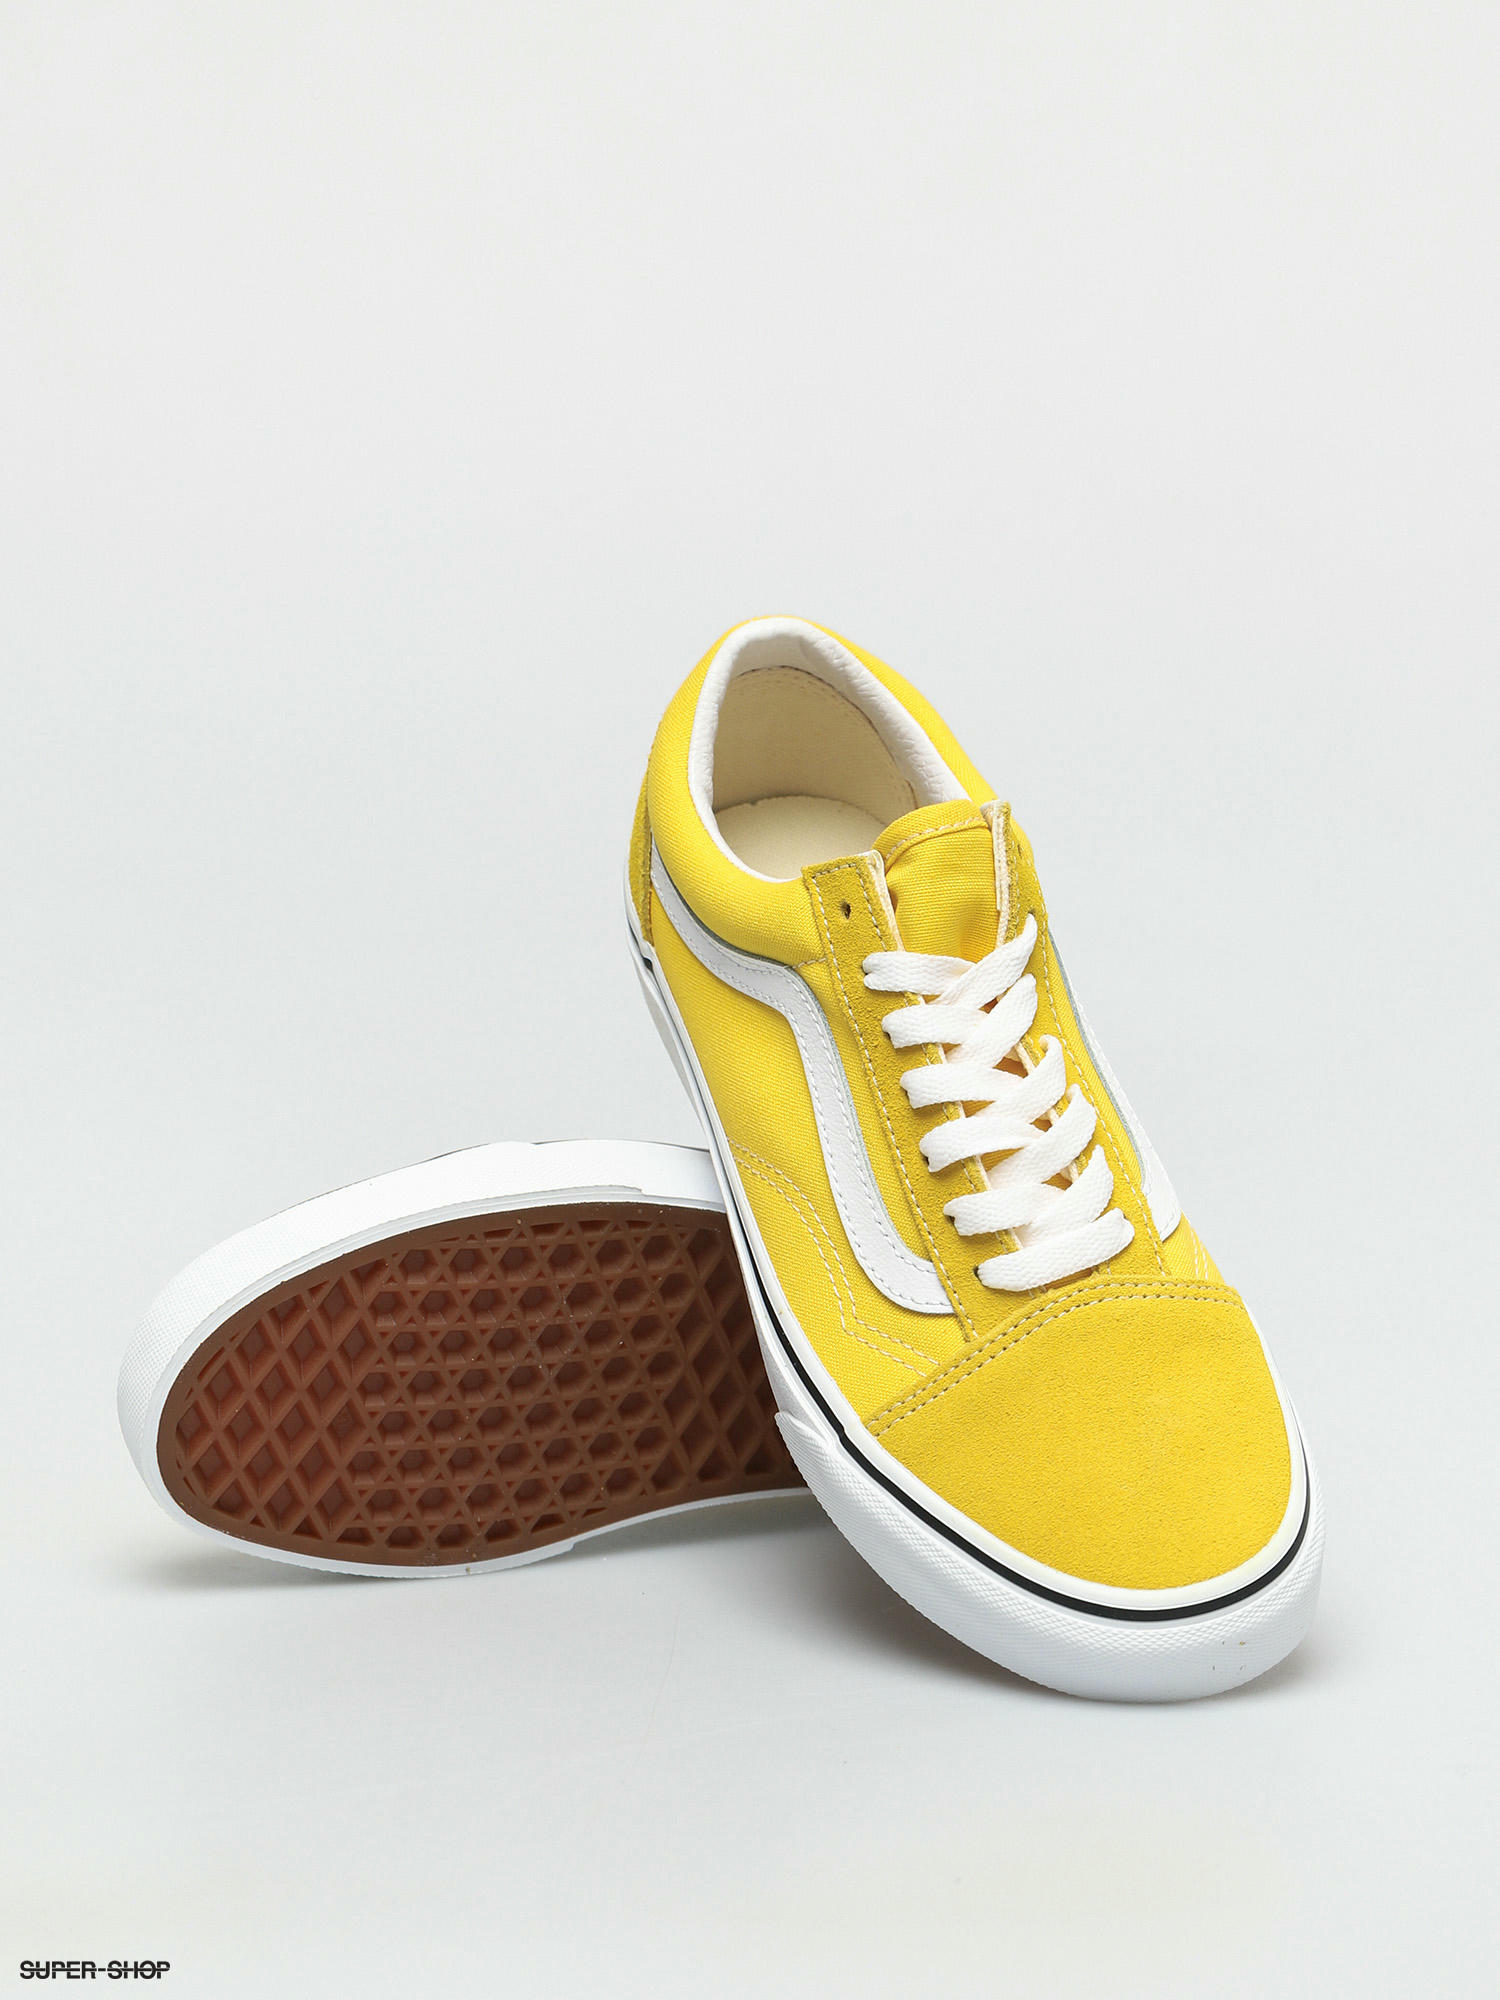 vans shoes old skool yellow